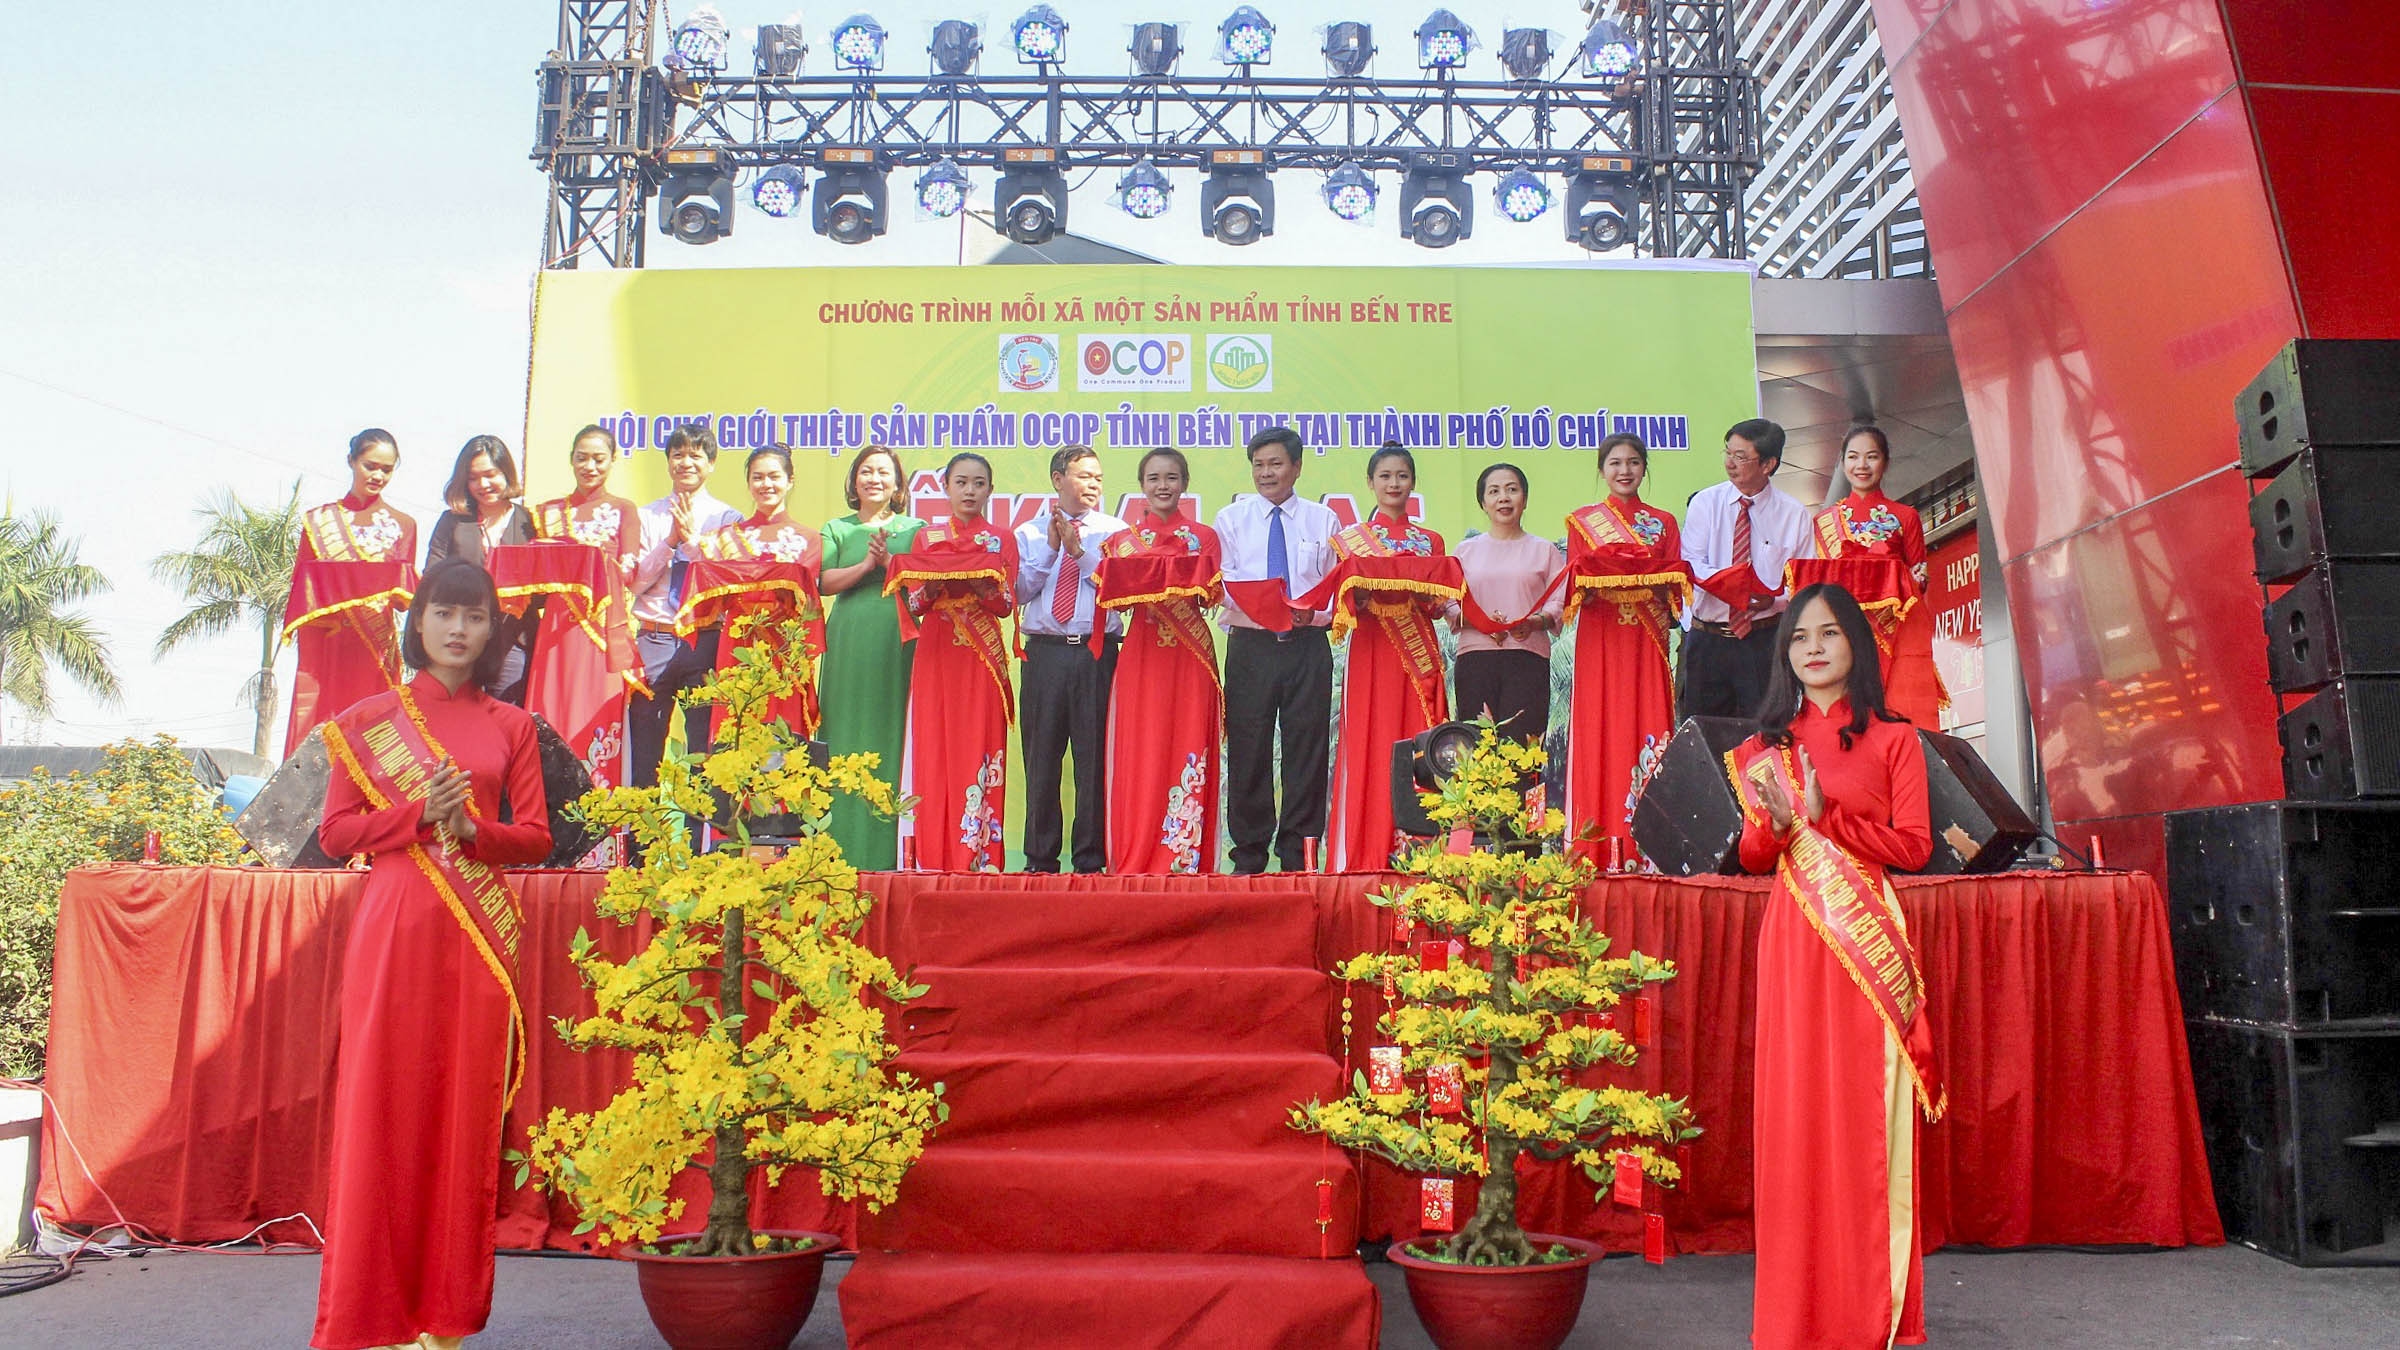 Lễ khai mạc Hội chợ Giới thiệu sản phẩm OCOP tỉnh Bến Tre tại Thành phố Hồ Chí Minh